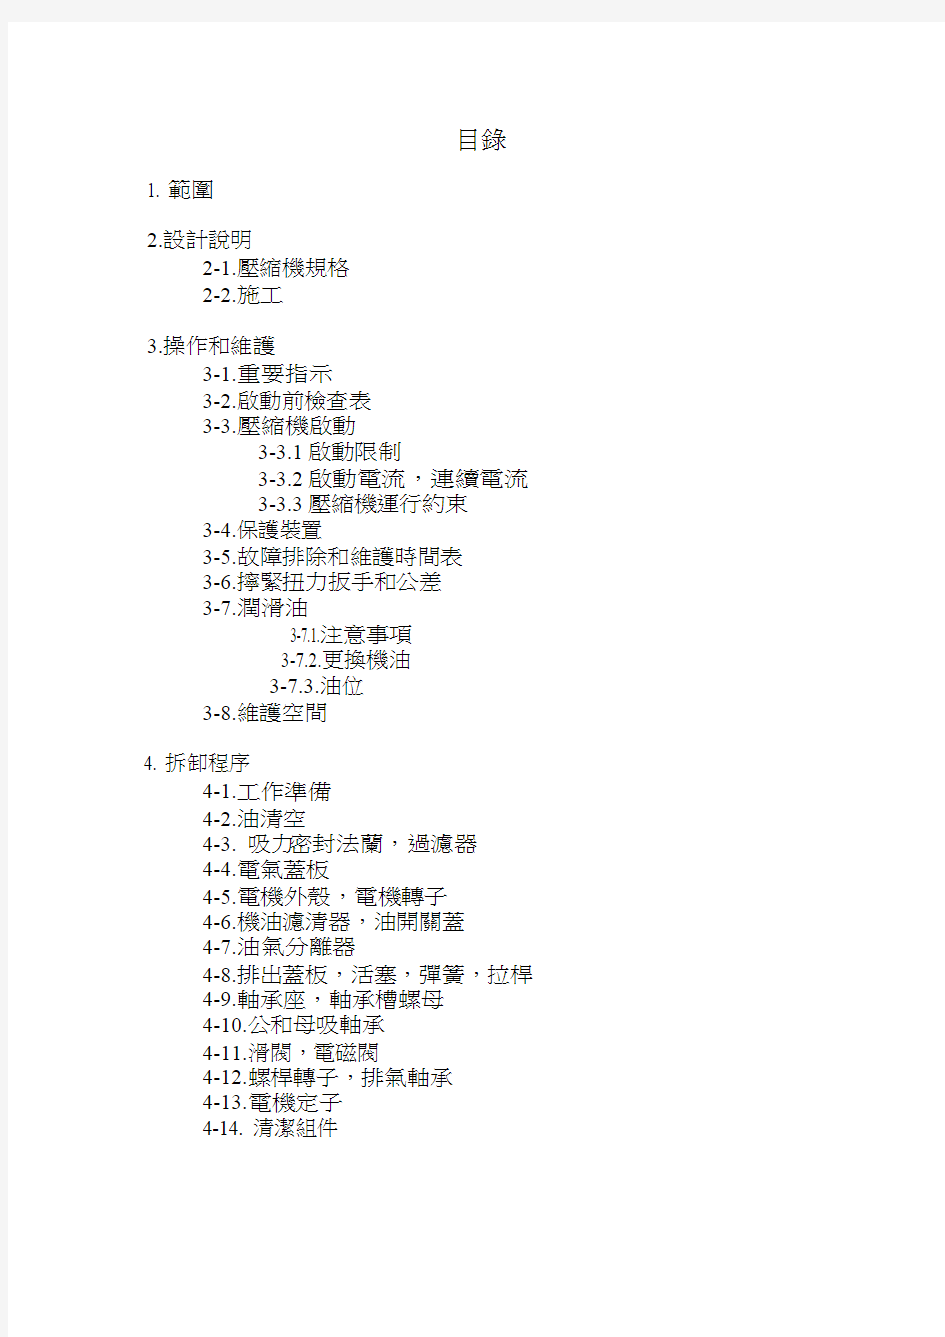 汉钟螺杆压缩机服务中文手册